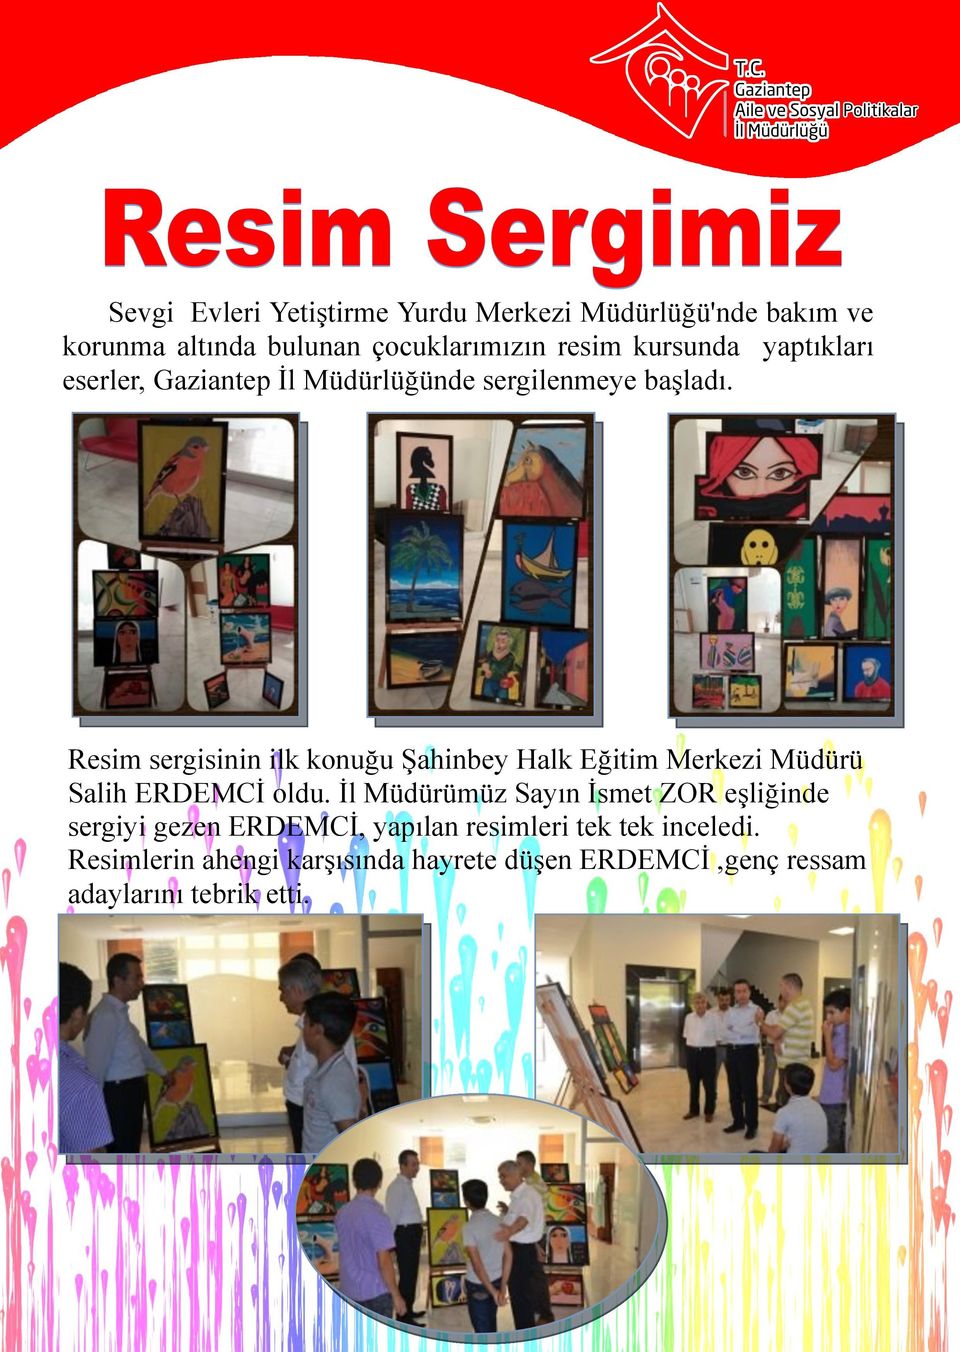 Resim sergisinin ilk konuğu Şahinbey Halk Eğitim Merkezi Müdürü Salih ERDEMCİ oldu.